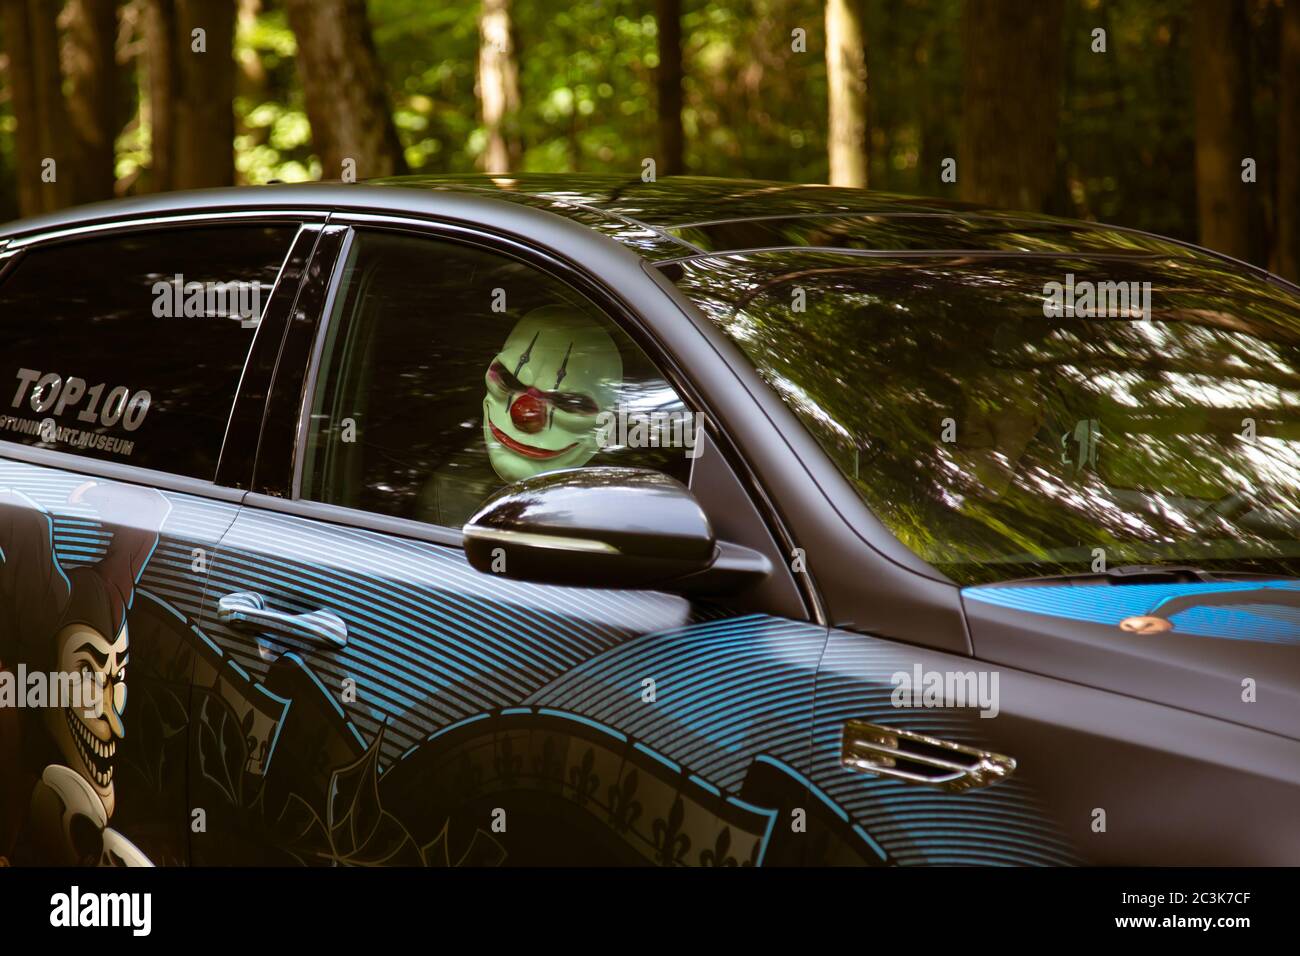 Moskau, Russland - 13. Juli 2019: Verrückter Clown in einem getunten Auto im Wald. Stockfoto